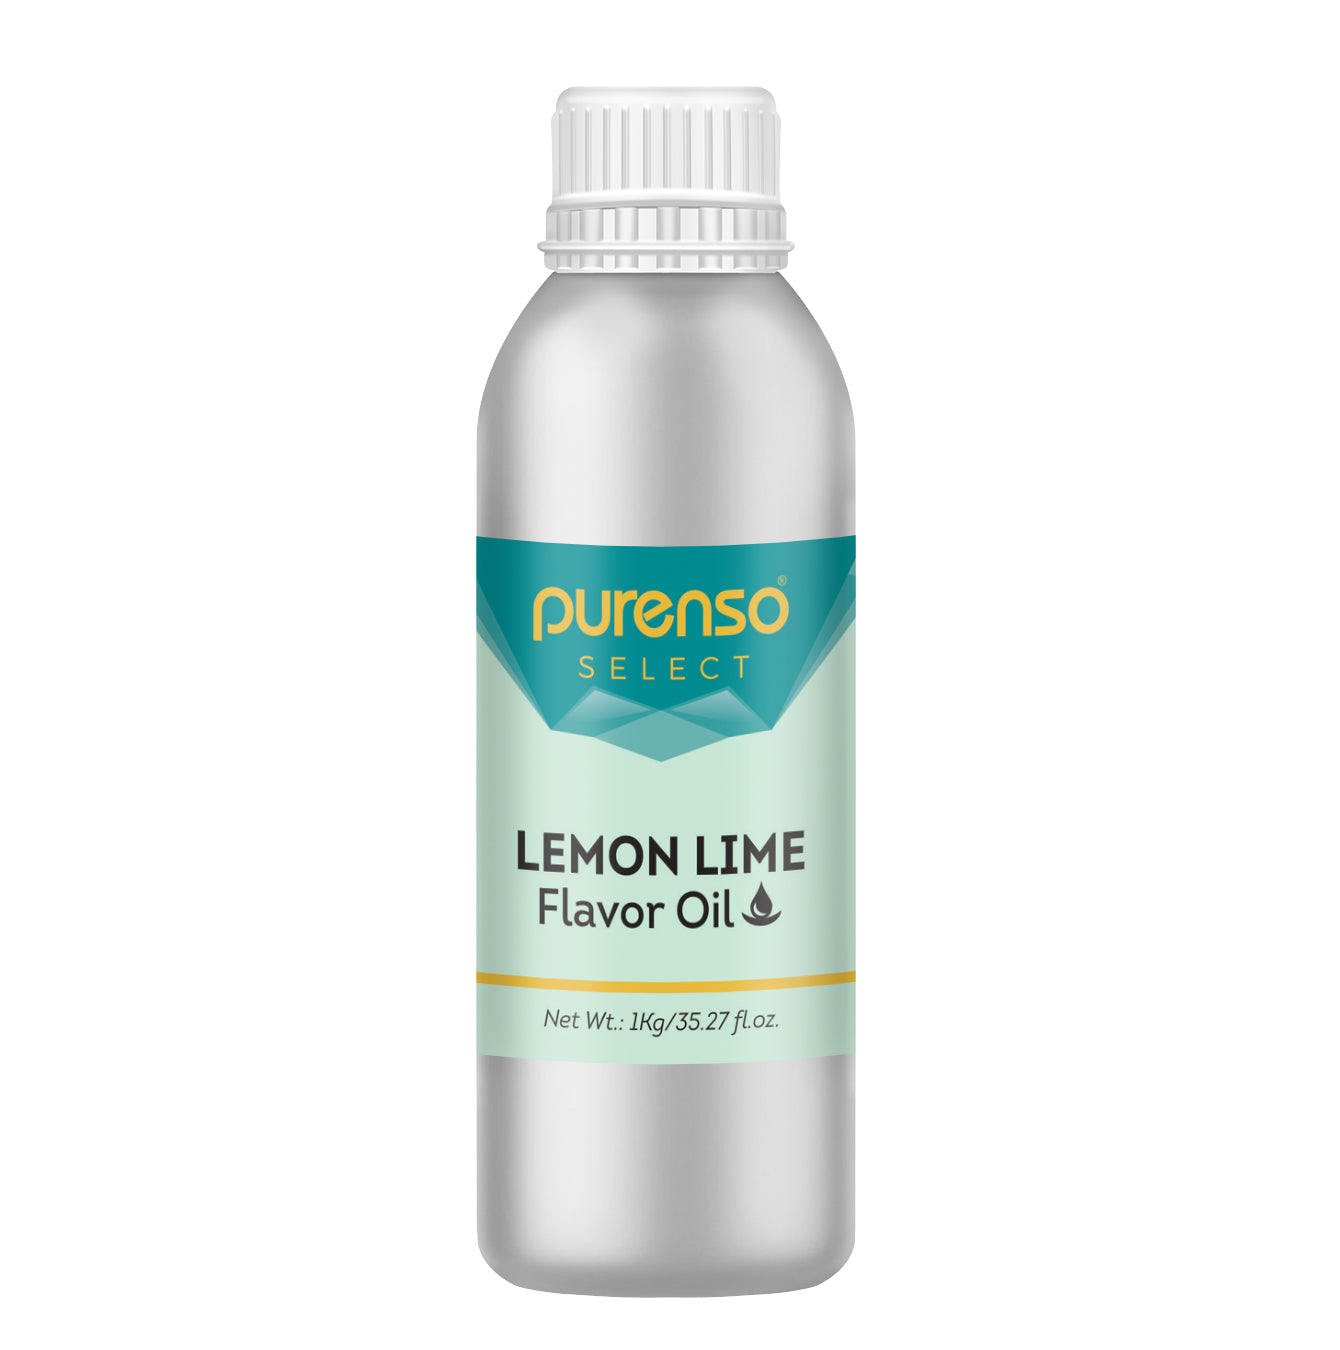 Lemon Lime Flavor Oil